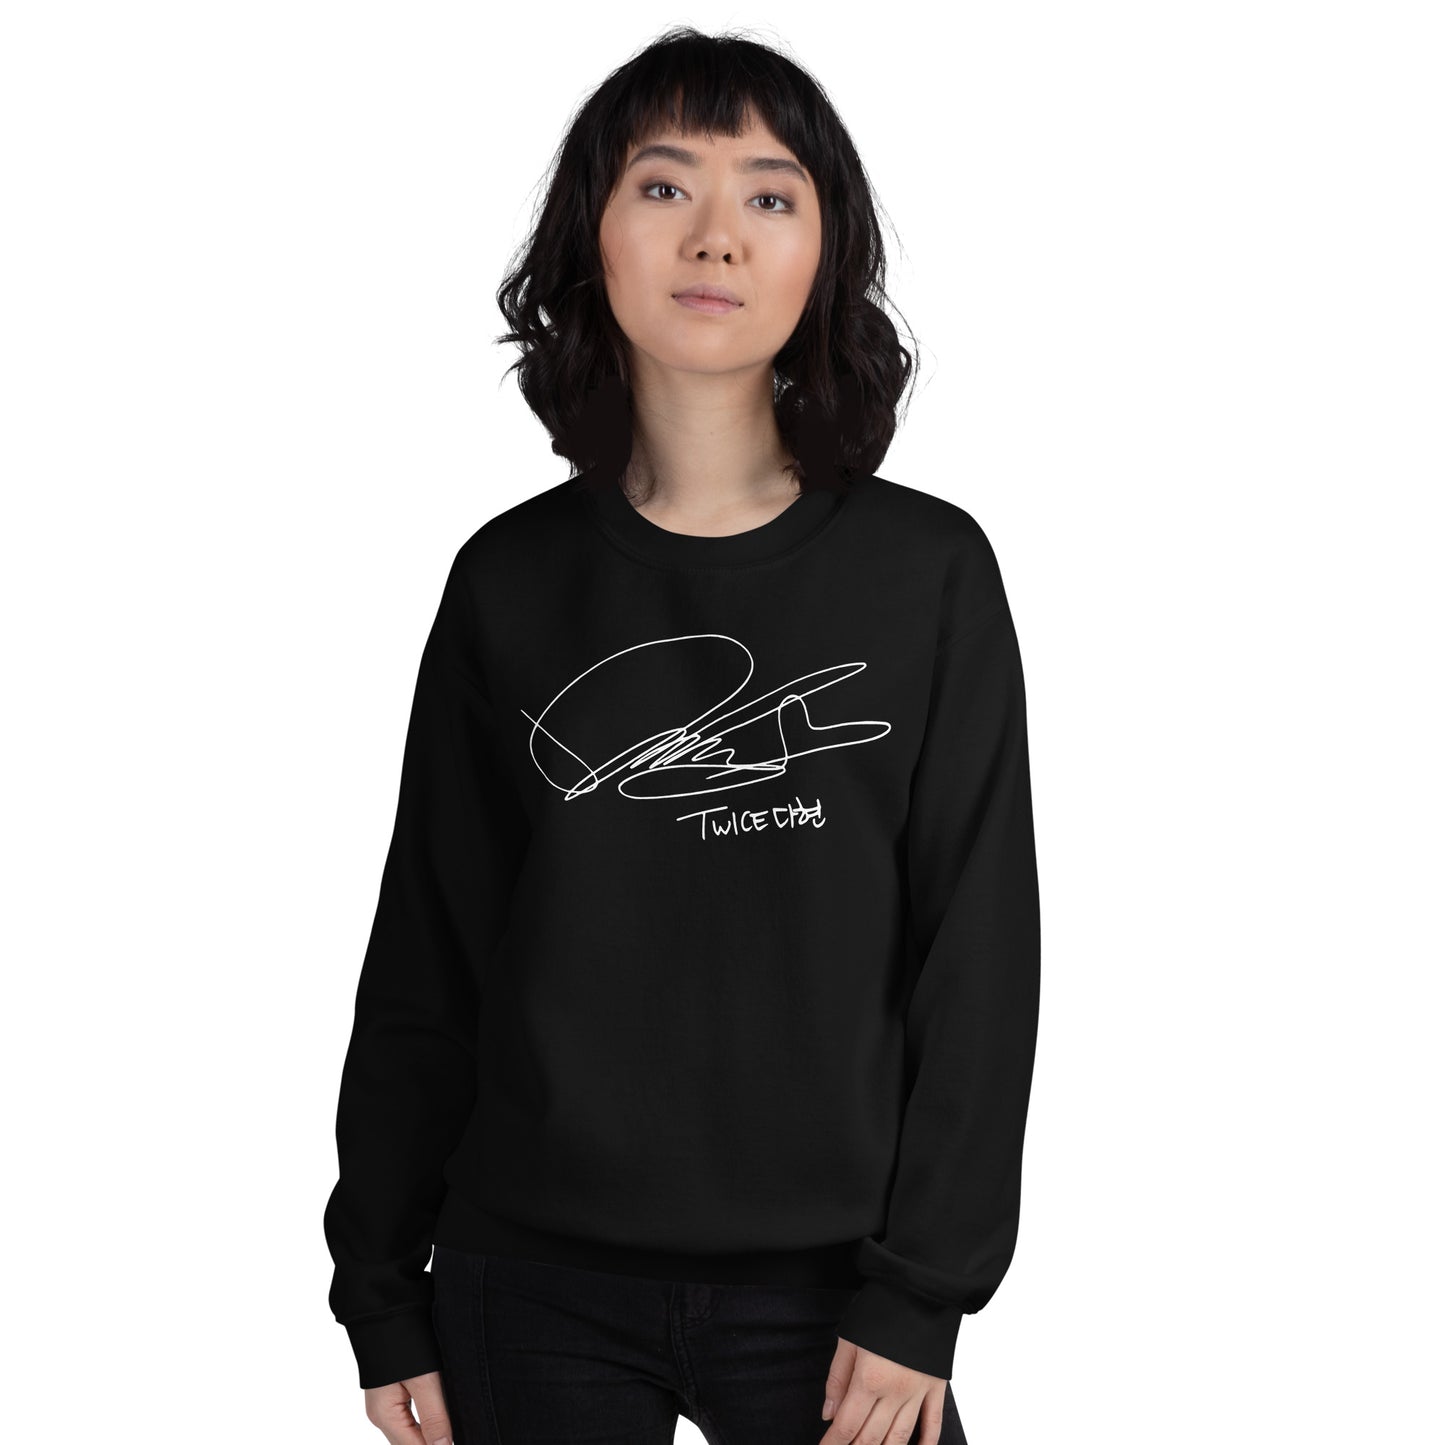 TWICE Dahyun, Kim Da Hyun Autograph Unisex Sweatshirt